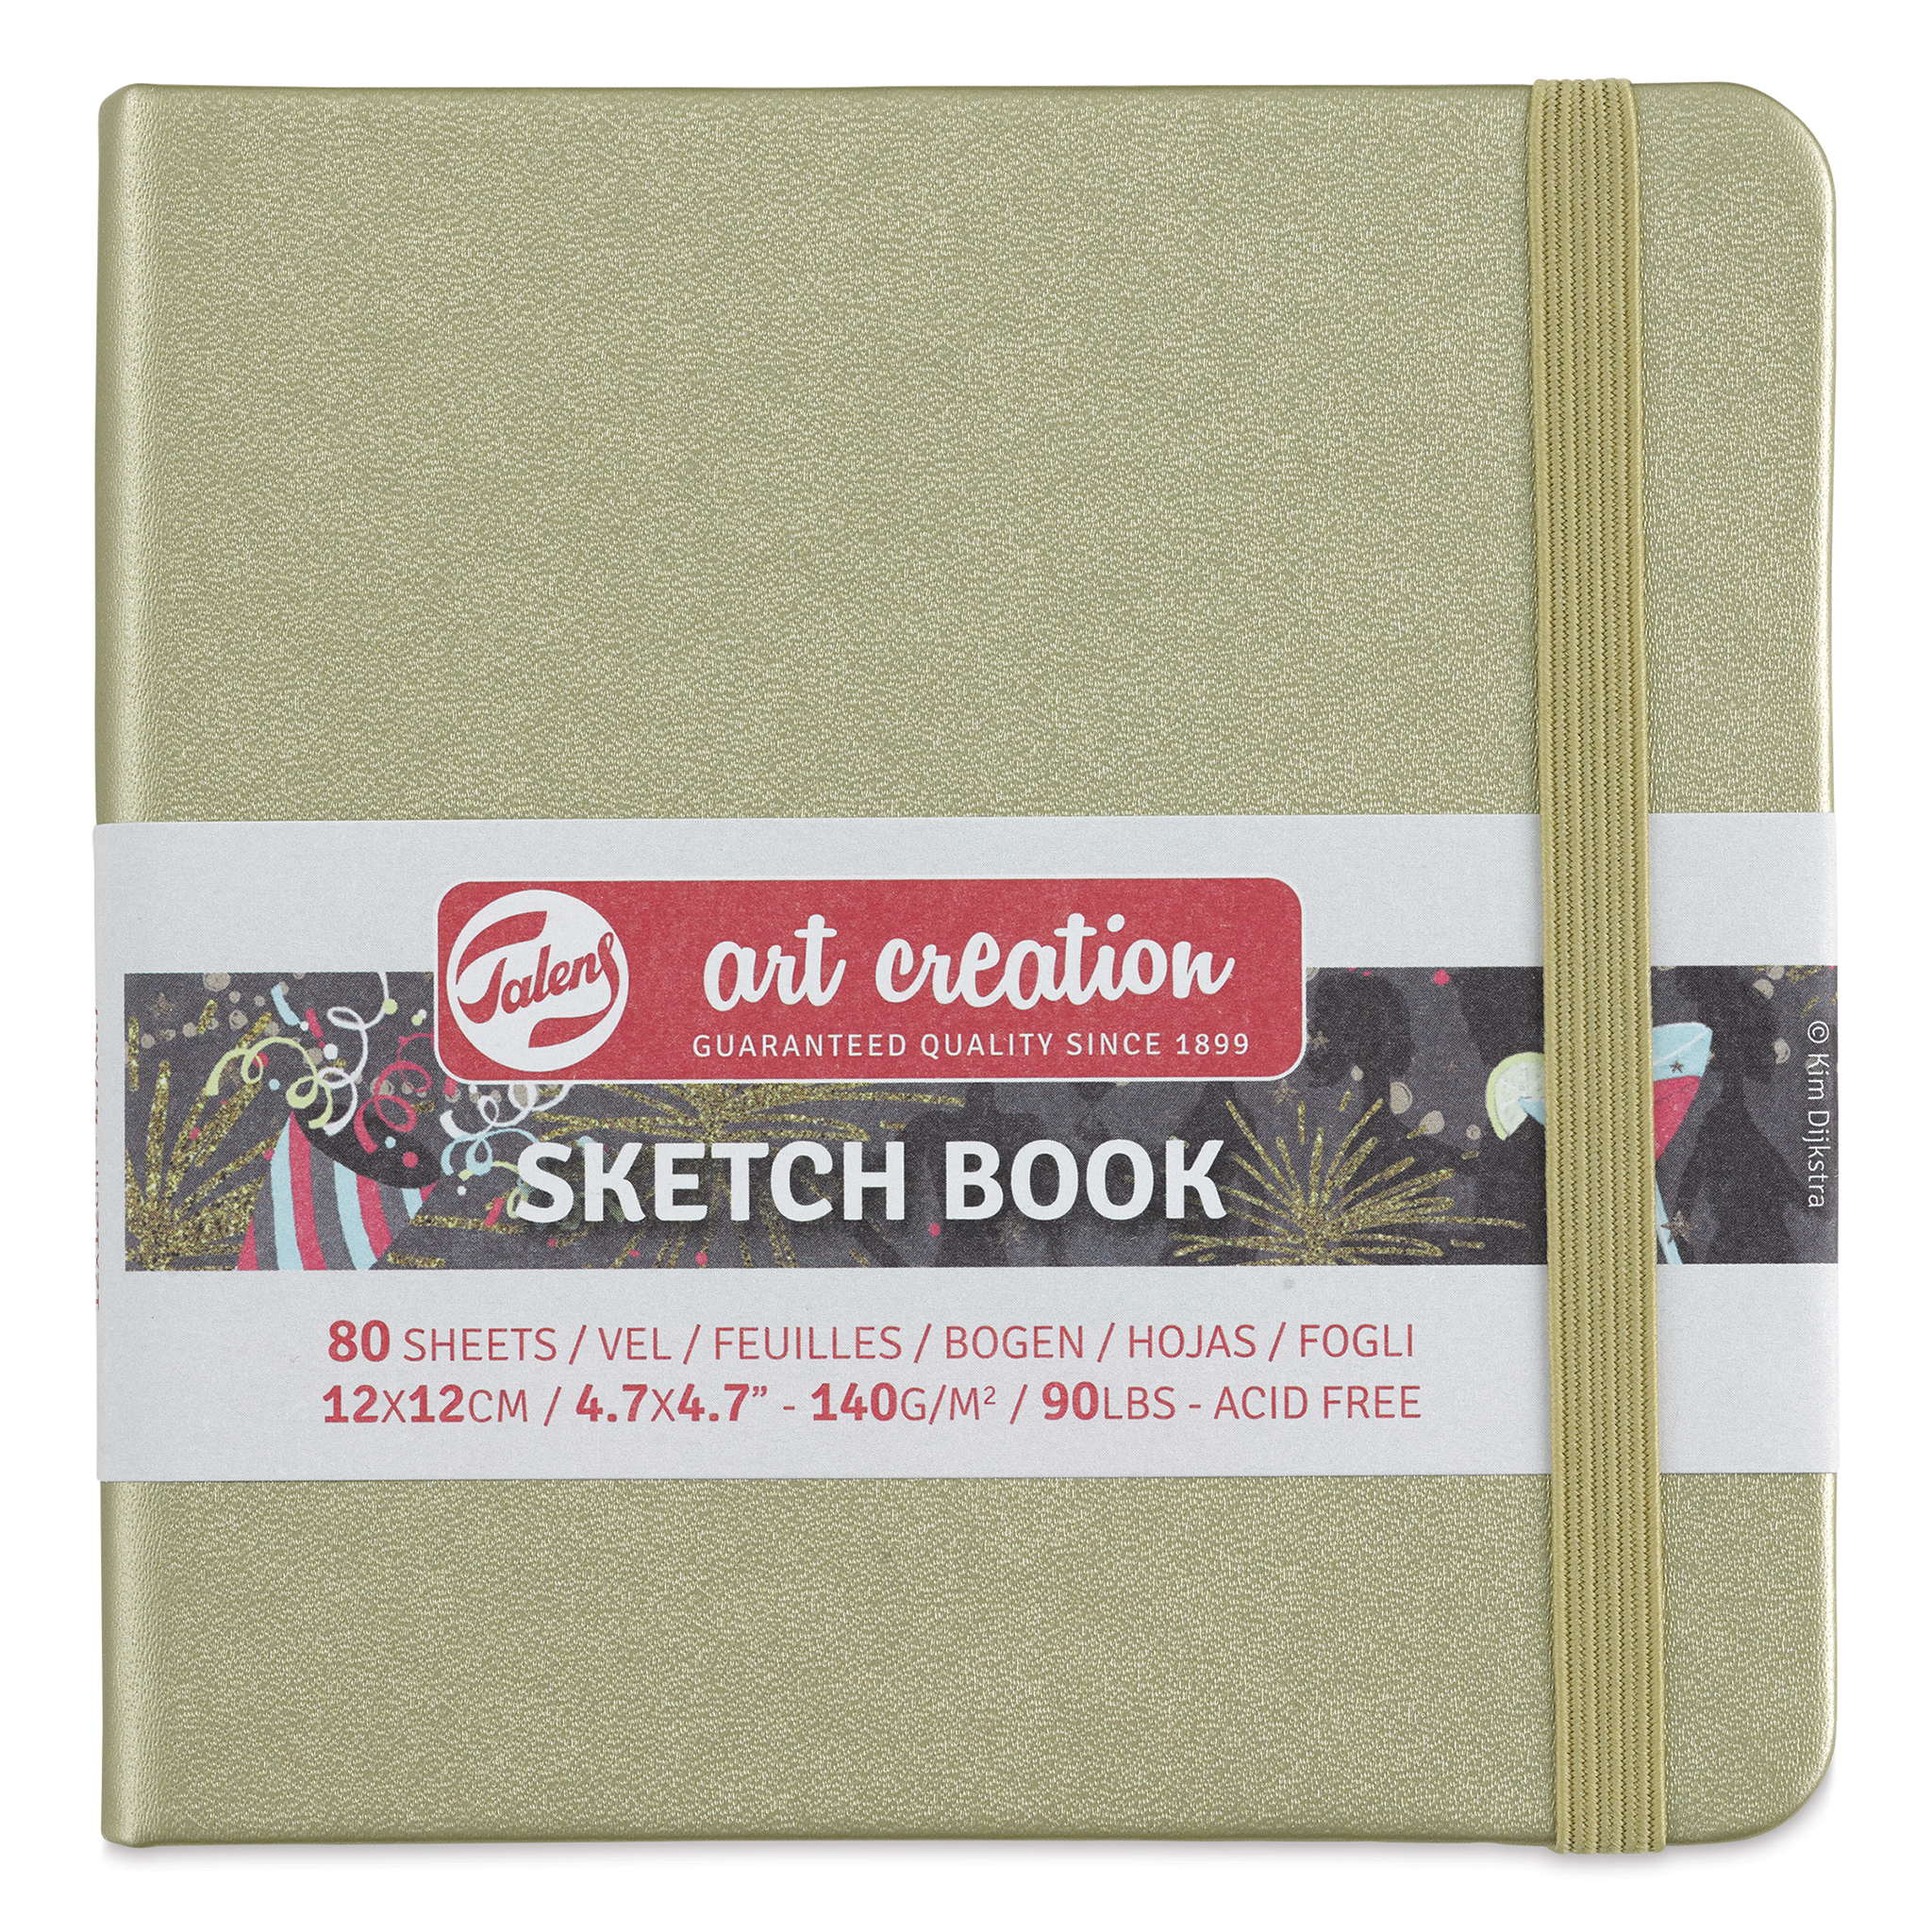 Talens Art Creations Sketchbook - Forest Green, 4.7 x 4.7, BLICK Art  Materials